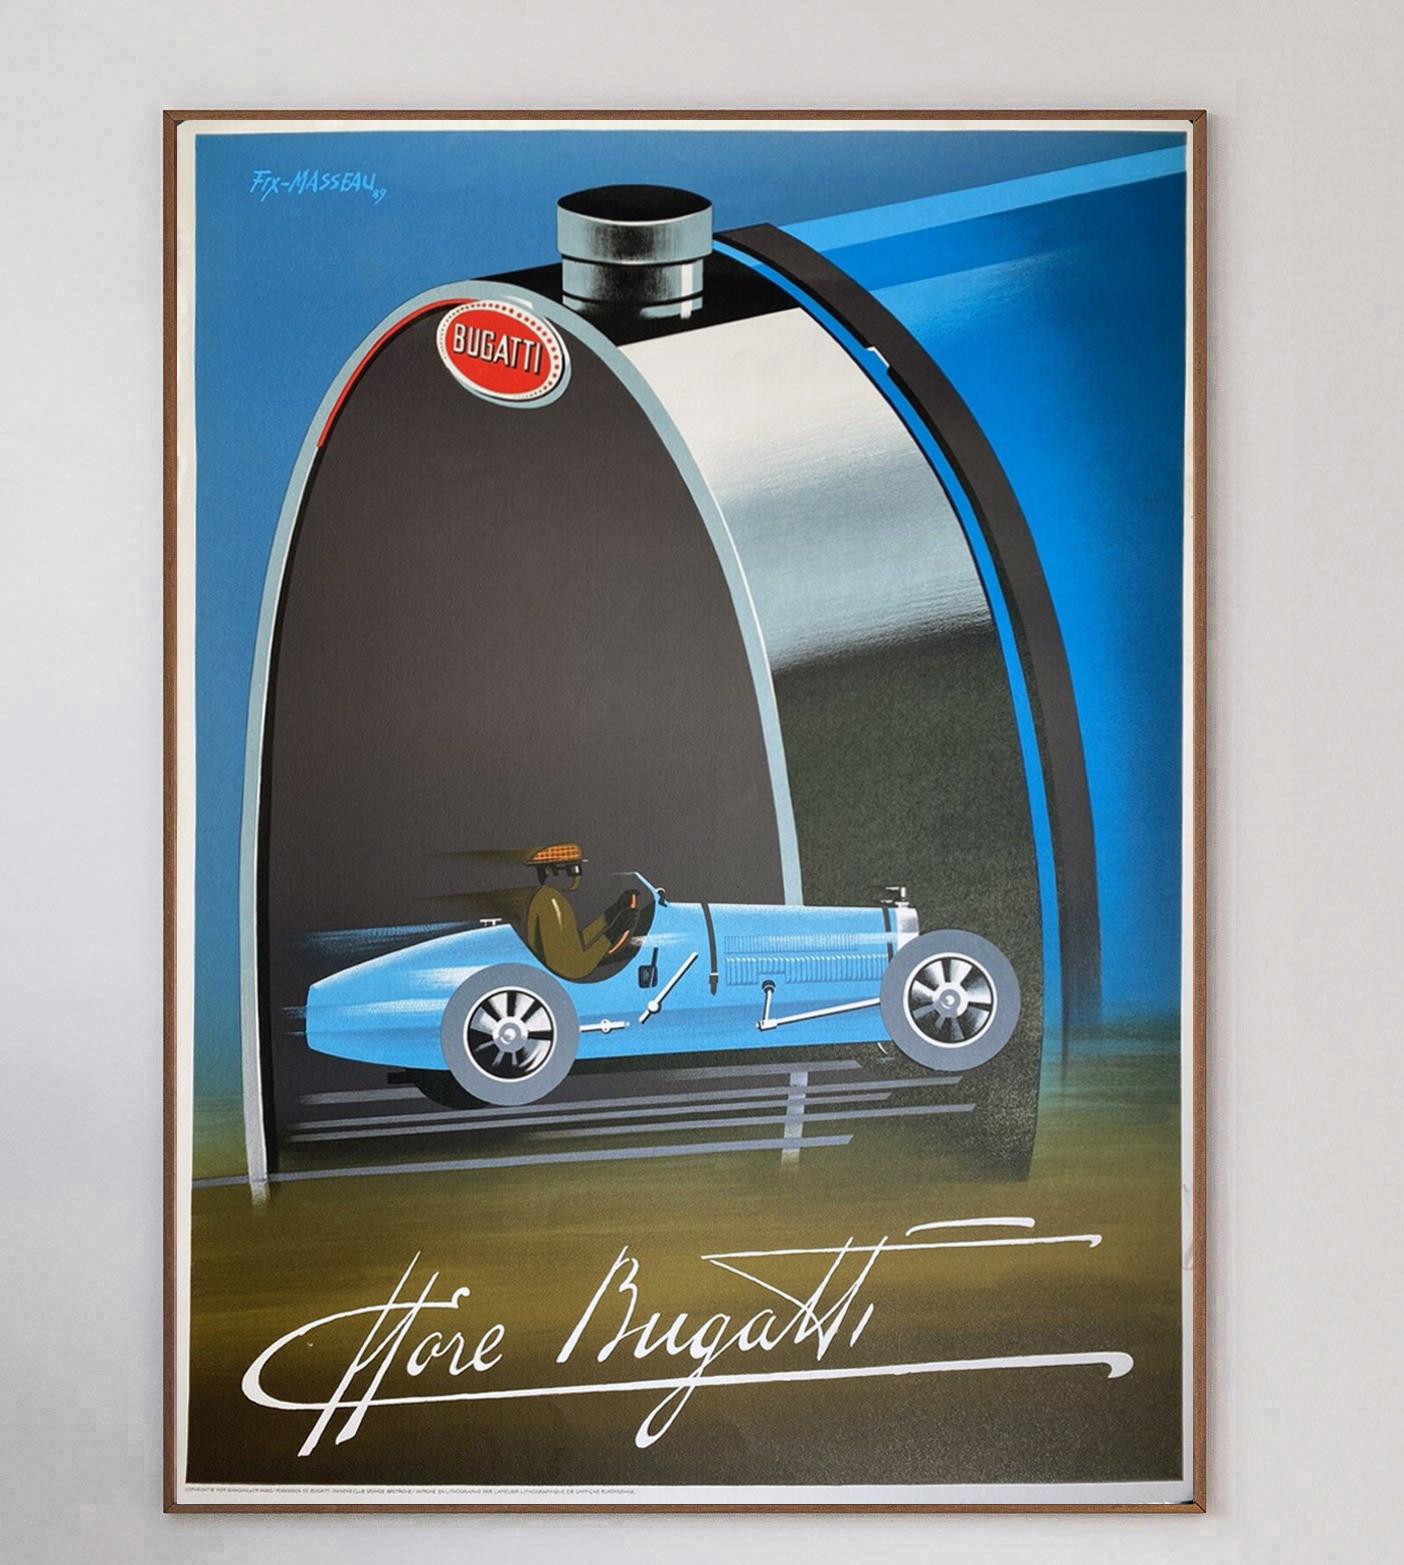 Magnifique affiche art déco de Fix-Masseau pour Bugatti. Cette lithographie sur pierre a été imprimée en 1989 et représente une Bugatti vintage lancée à toute allure dans un style fantastique. Le constructeur automobile franco-allemand de voitures à